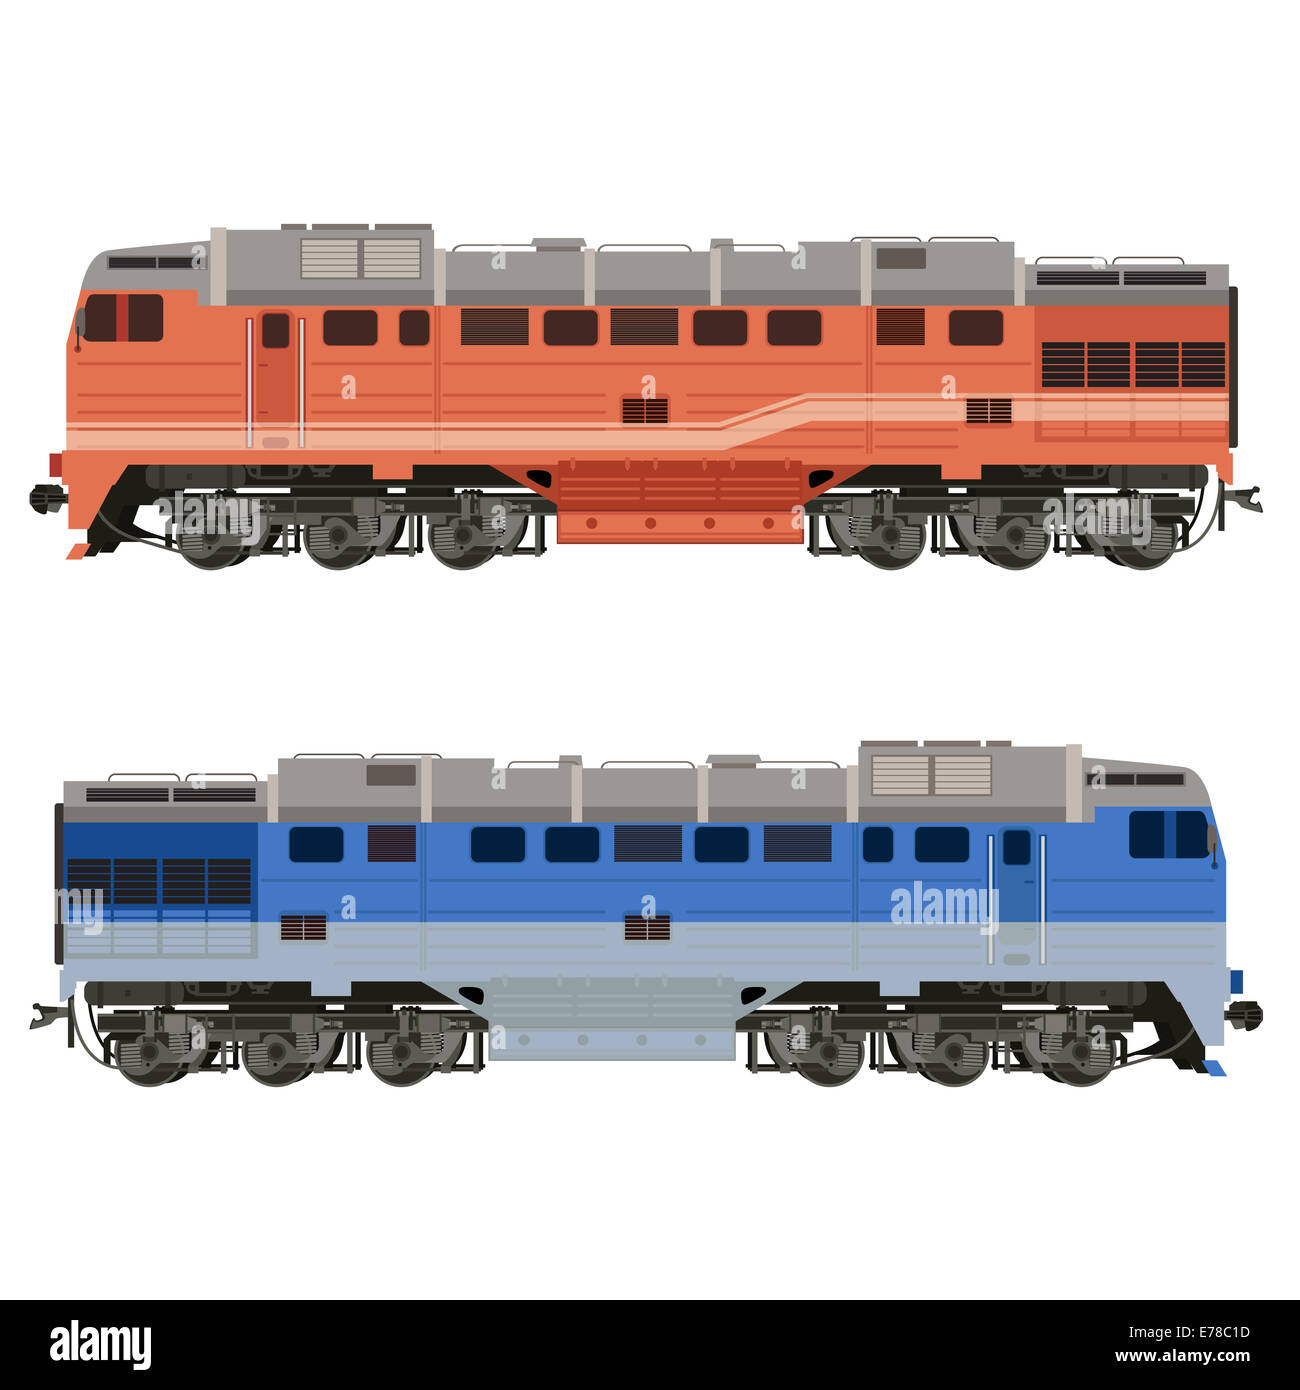 Locomotive Stock Photo